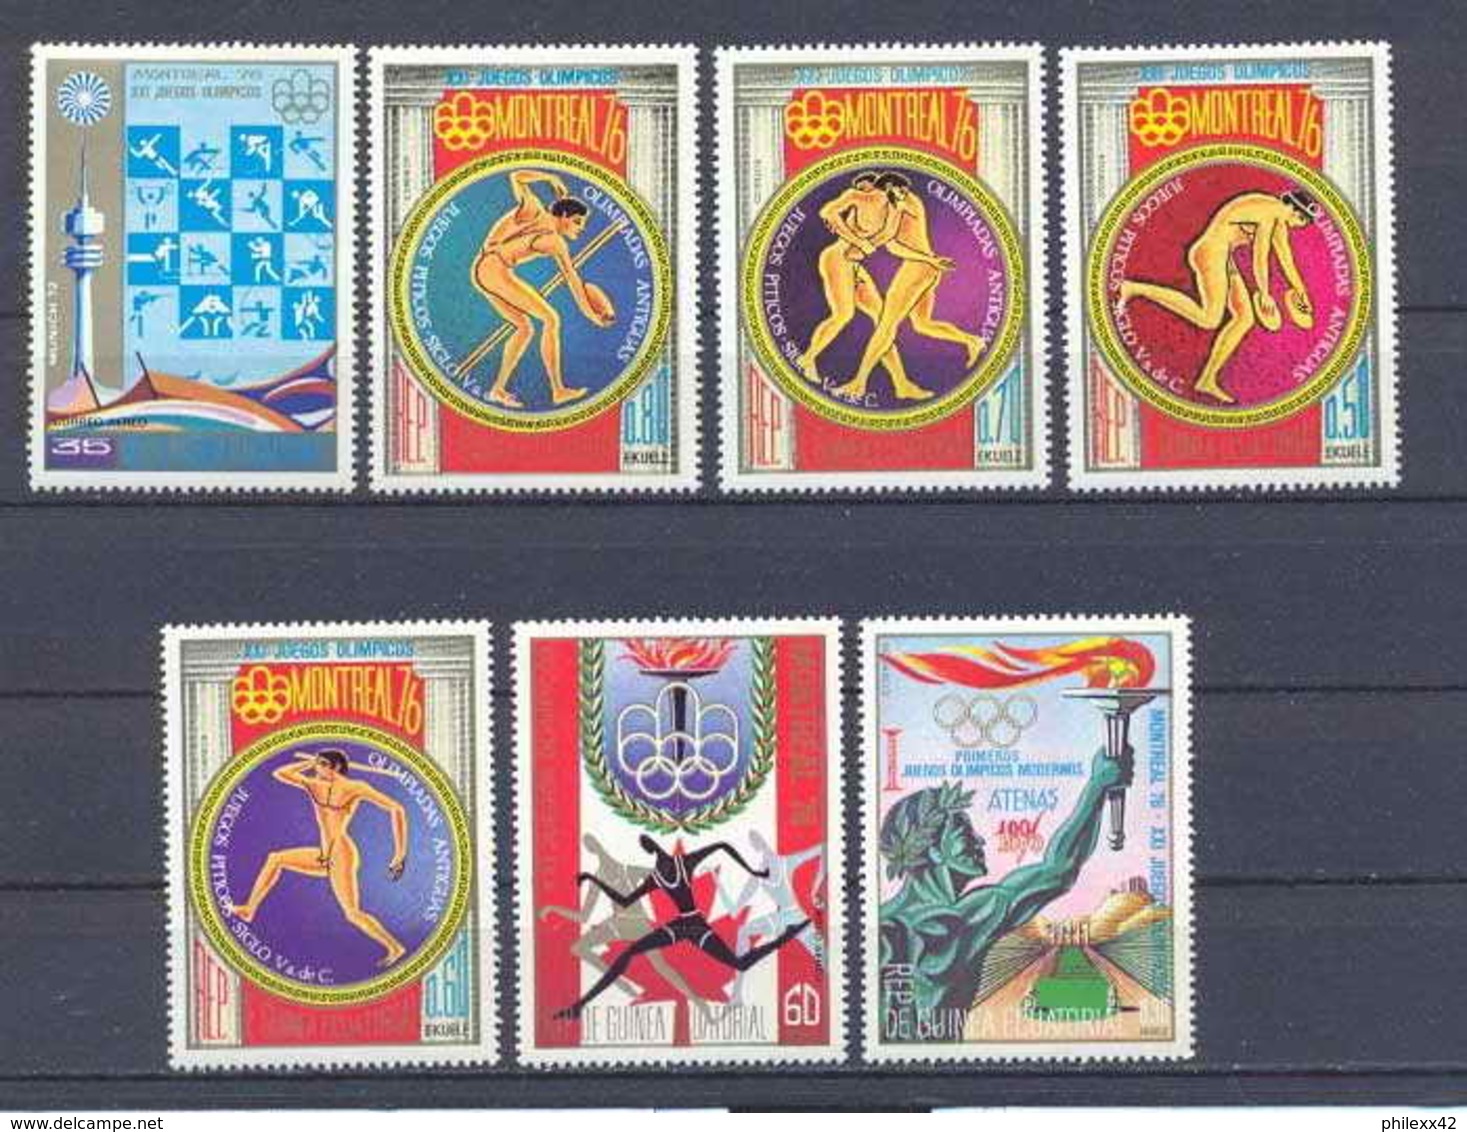 Guinée équatoriale Guinea 125 N°680/86 Jeux Olympiques Olympic Games Montréal 1976 Serie Complète MNH ** - Verano 1976: Montréal